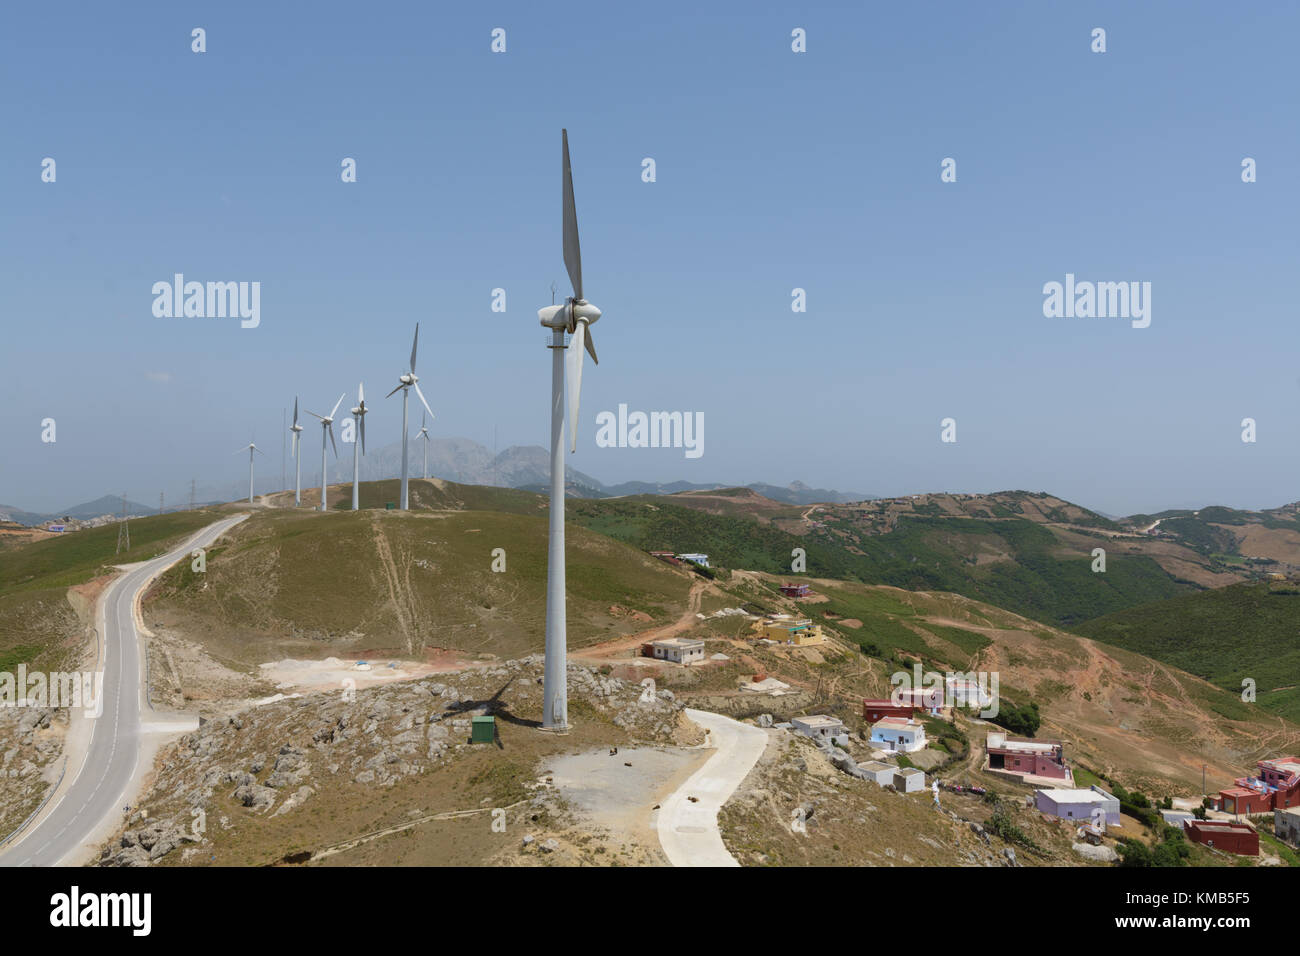 Wind turbine landscape in Morocco Stock Photo